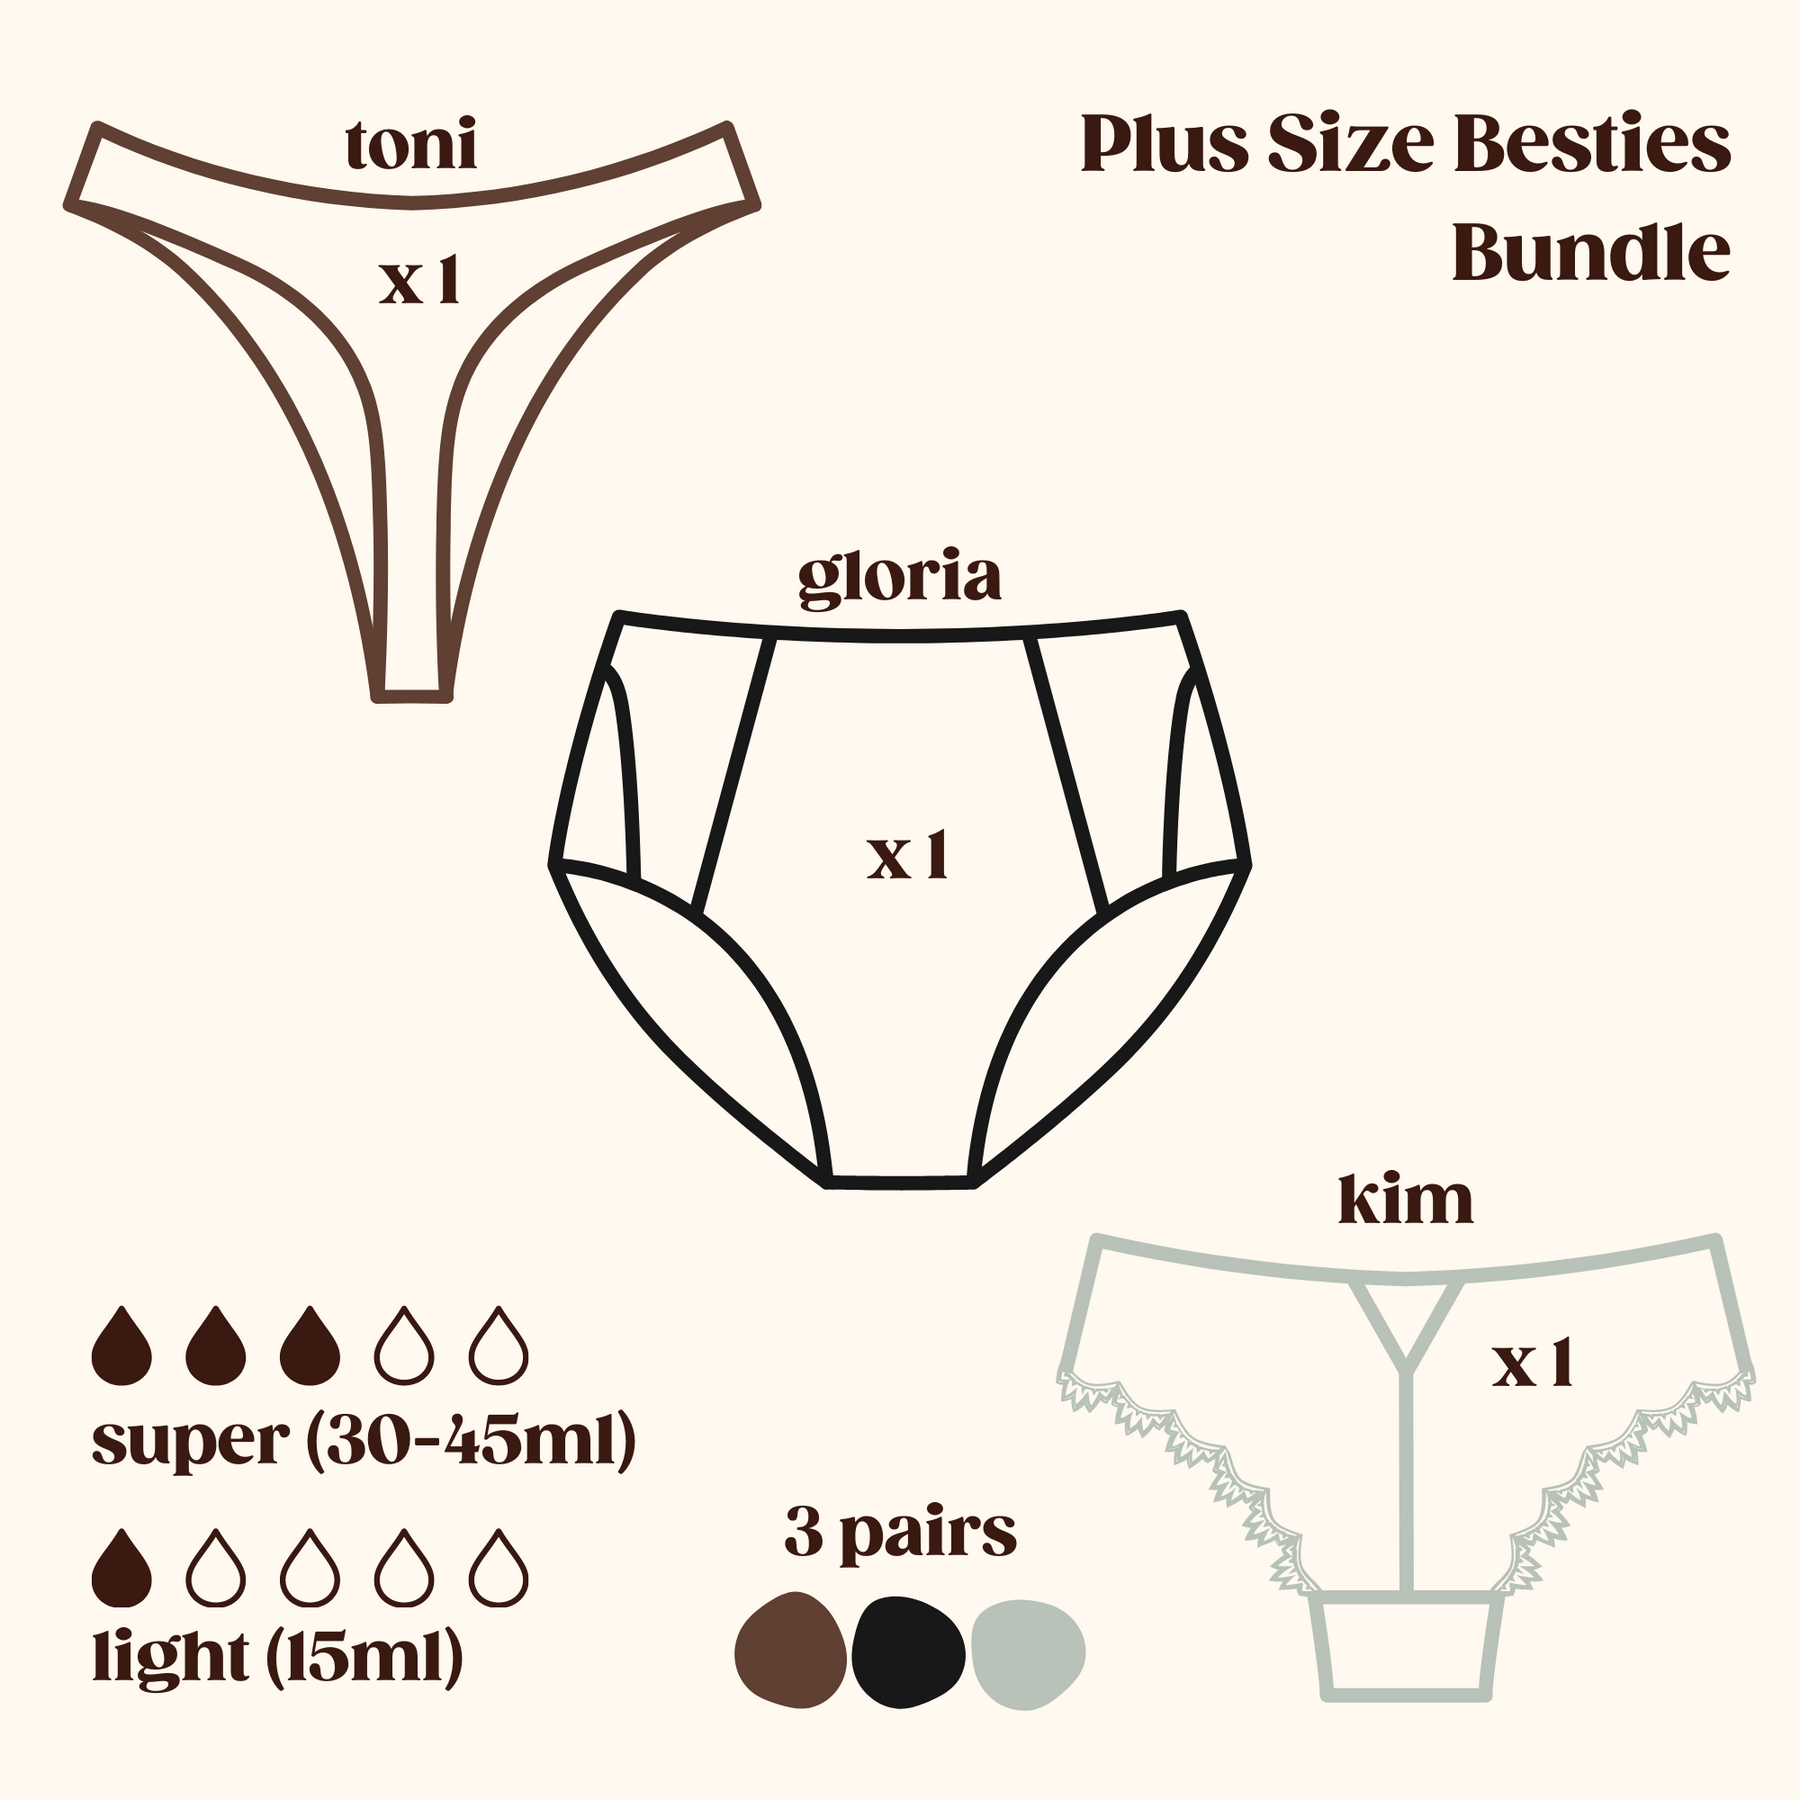 Plus Size Besties Bundle - Leak Proof Underwear